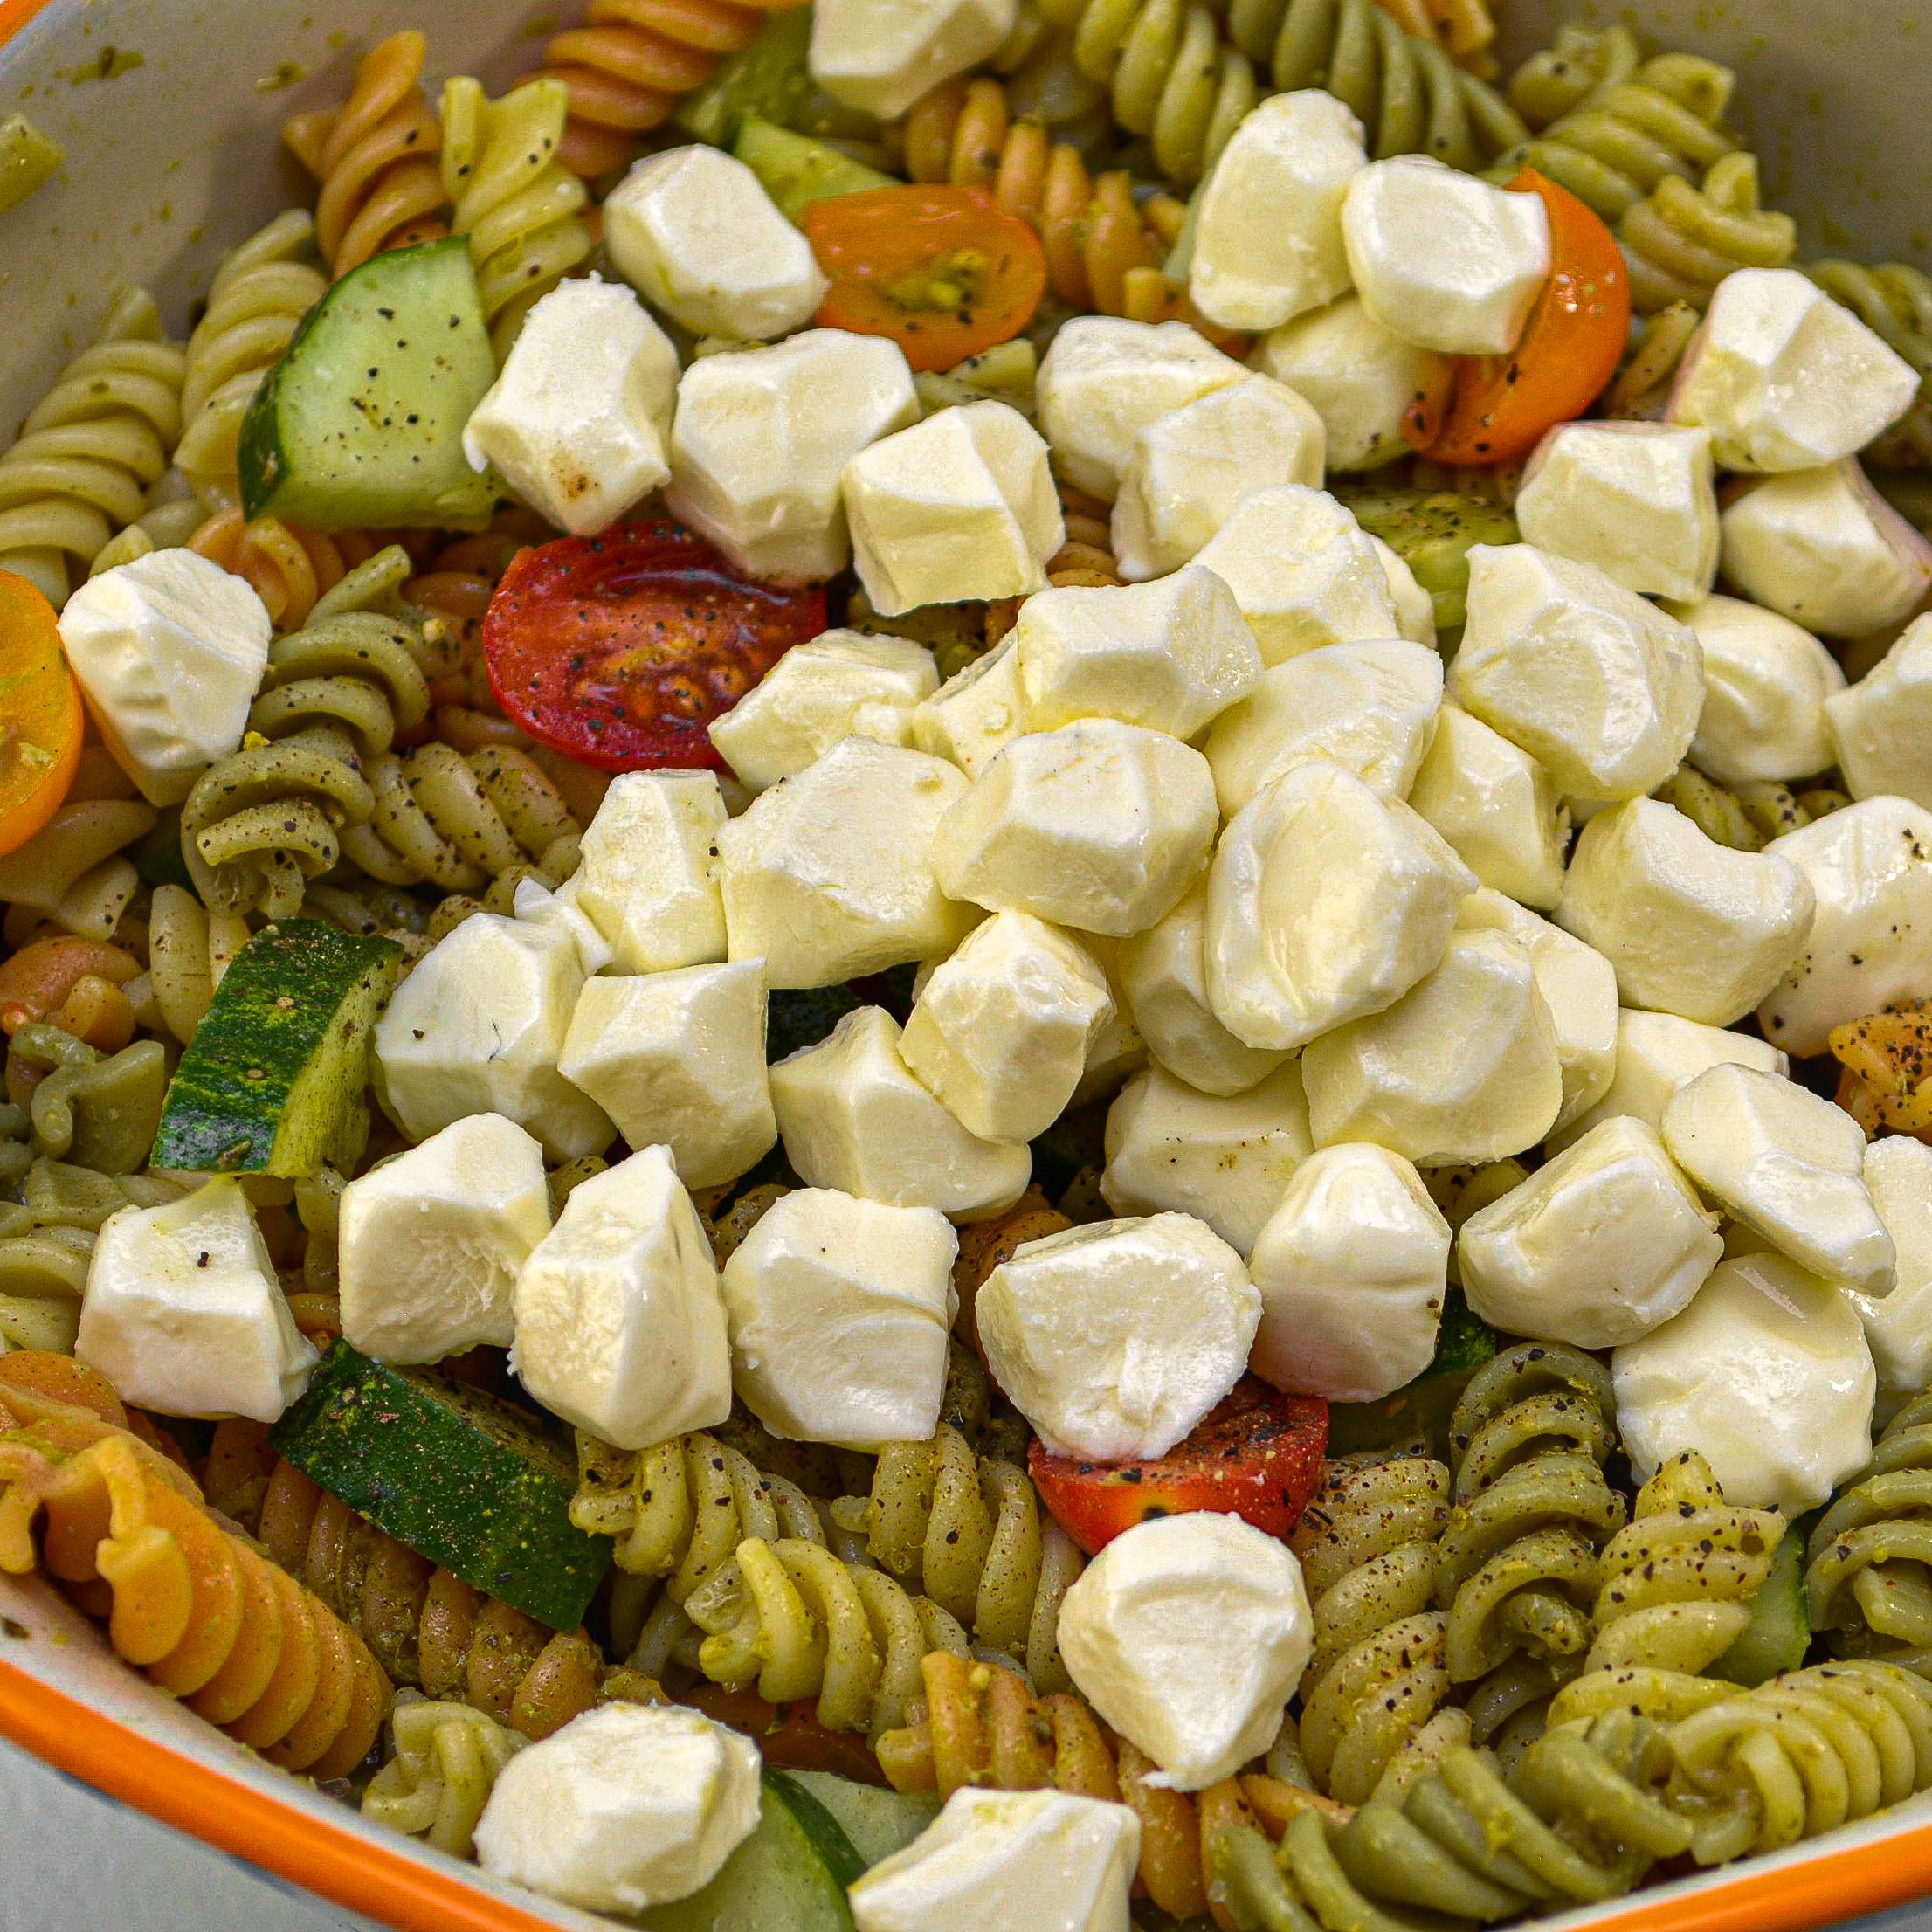 Mix in 6 ounces of fresh mozzarella balls into the pasta salad.